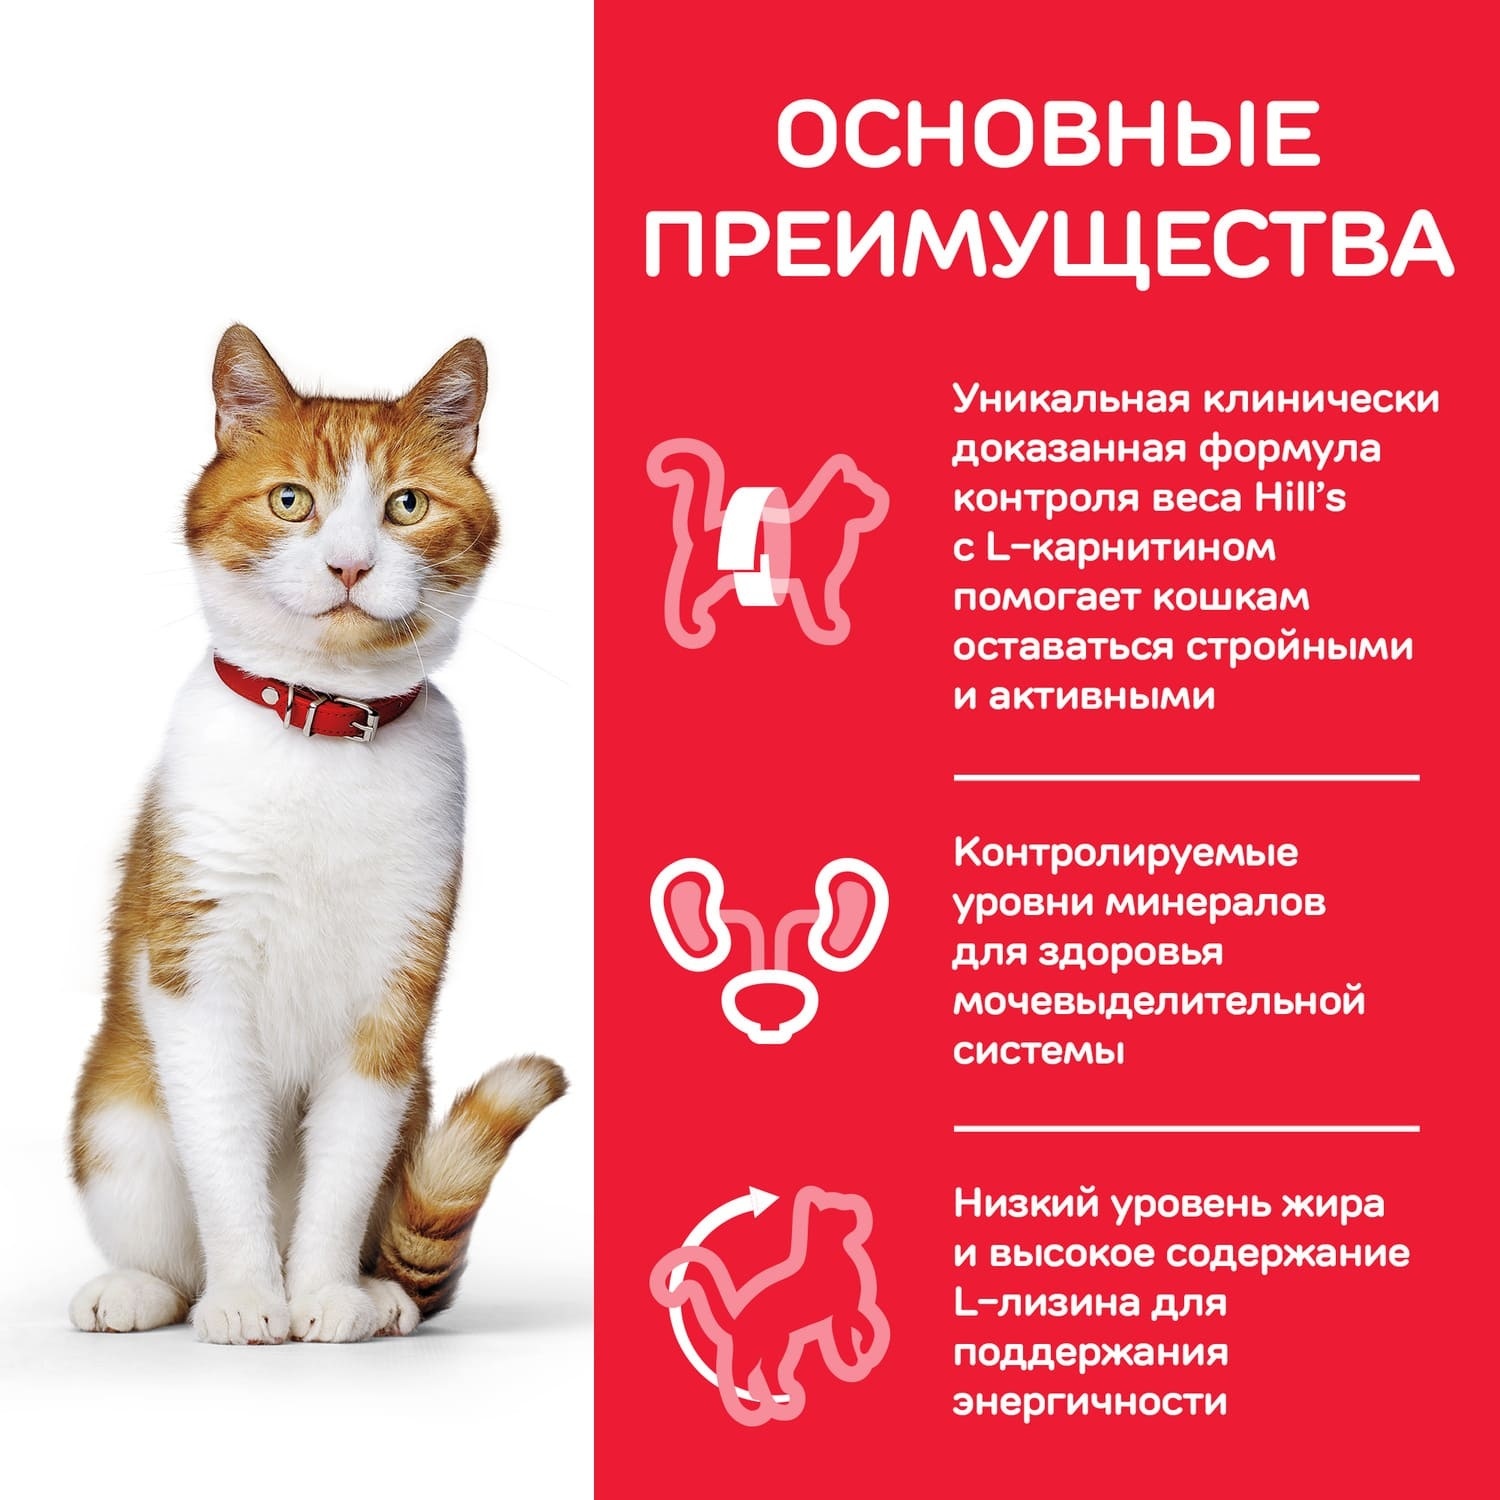 для молодых стерилизованных кошек и кастрированных котов, с уткой (10 кг) Hill's Science Plan для молодых стерилизованных кошек и кастрированных котов, с уткой (10 кг) - фото 5